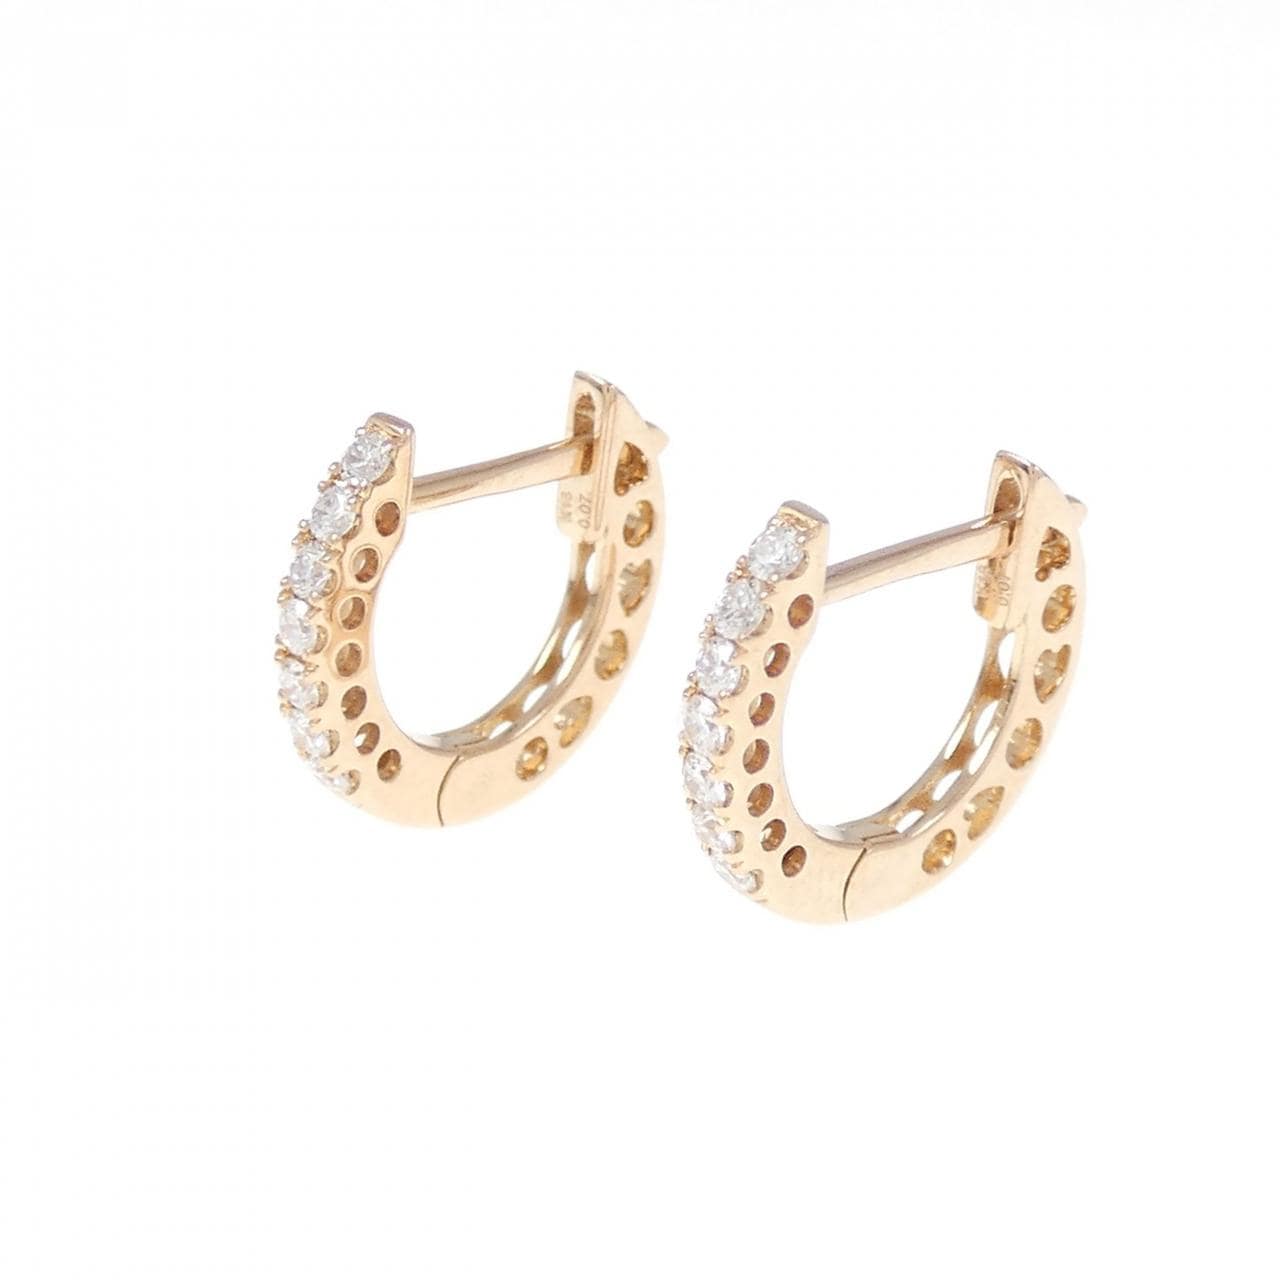 K18PG Diamond earrings 0.14CT